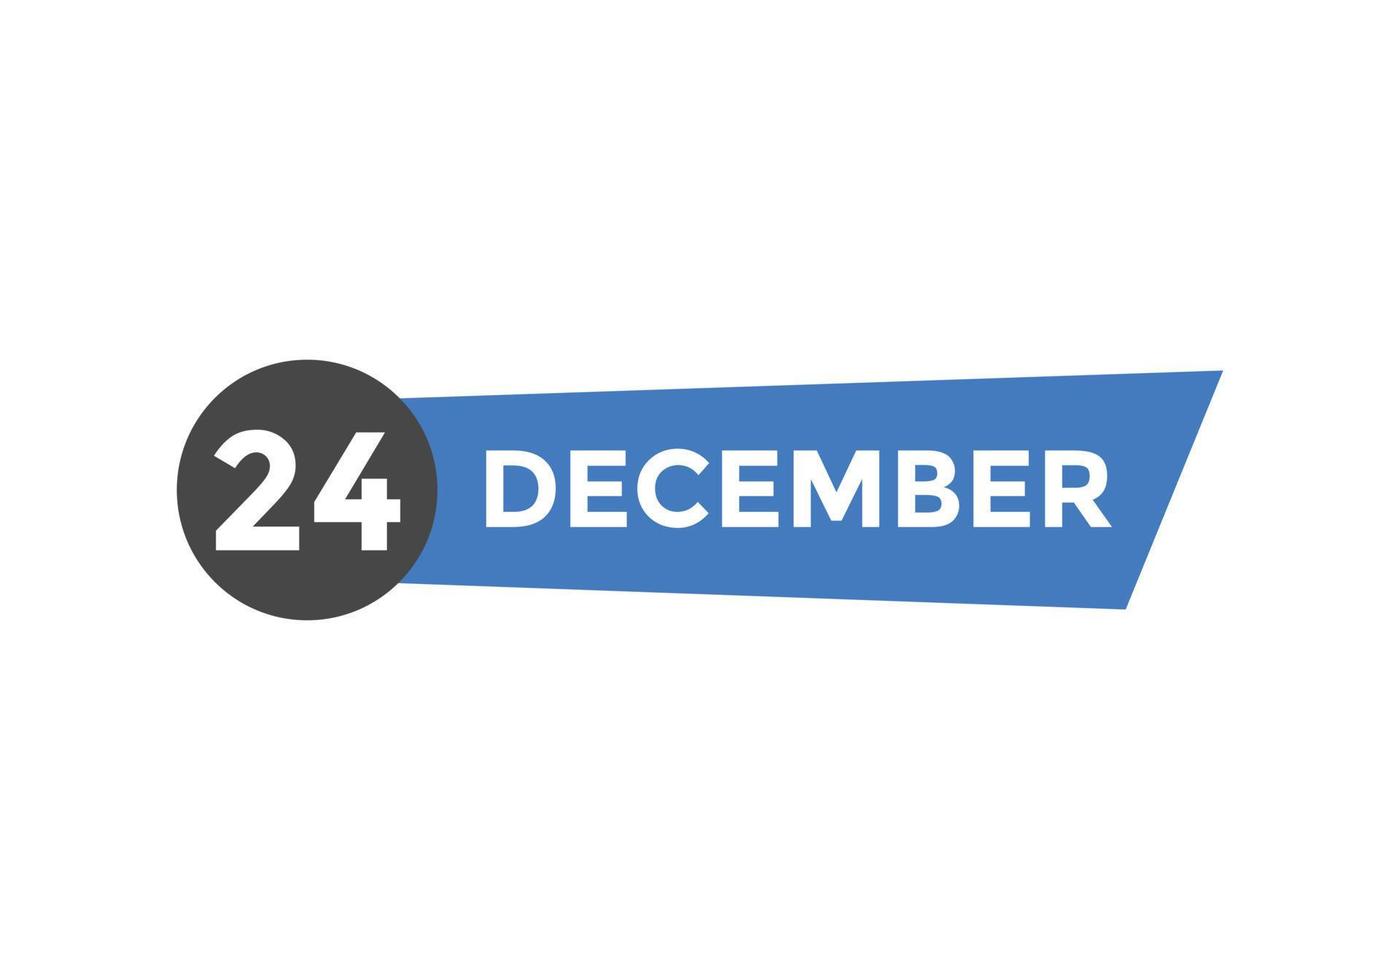 december 24 kalender herinnering. 24e december dagelijks kalender icoon sjabloon. kalender 24e december icoon ontwerp sjabloon. vector illustratie